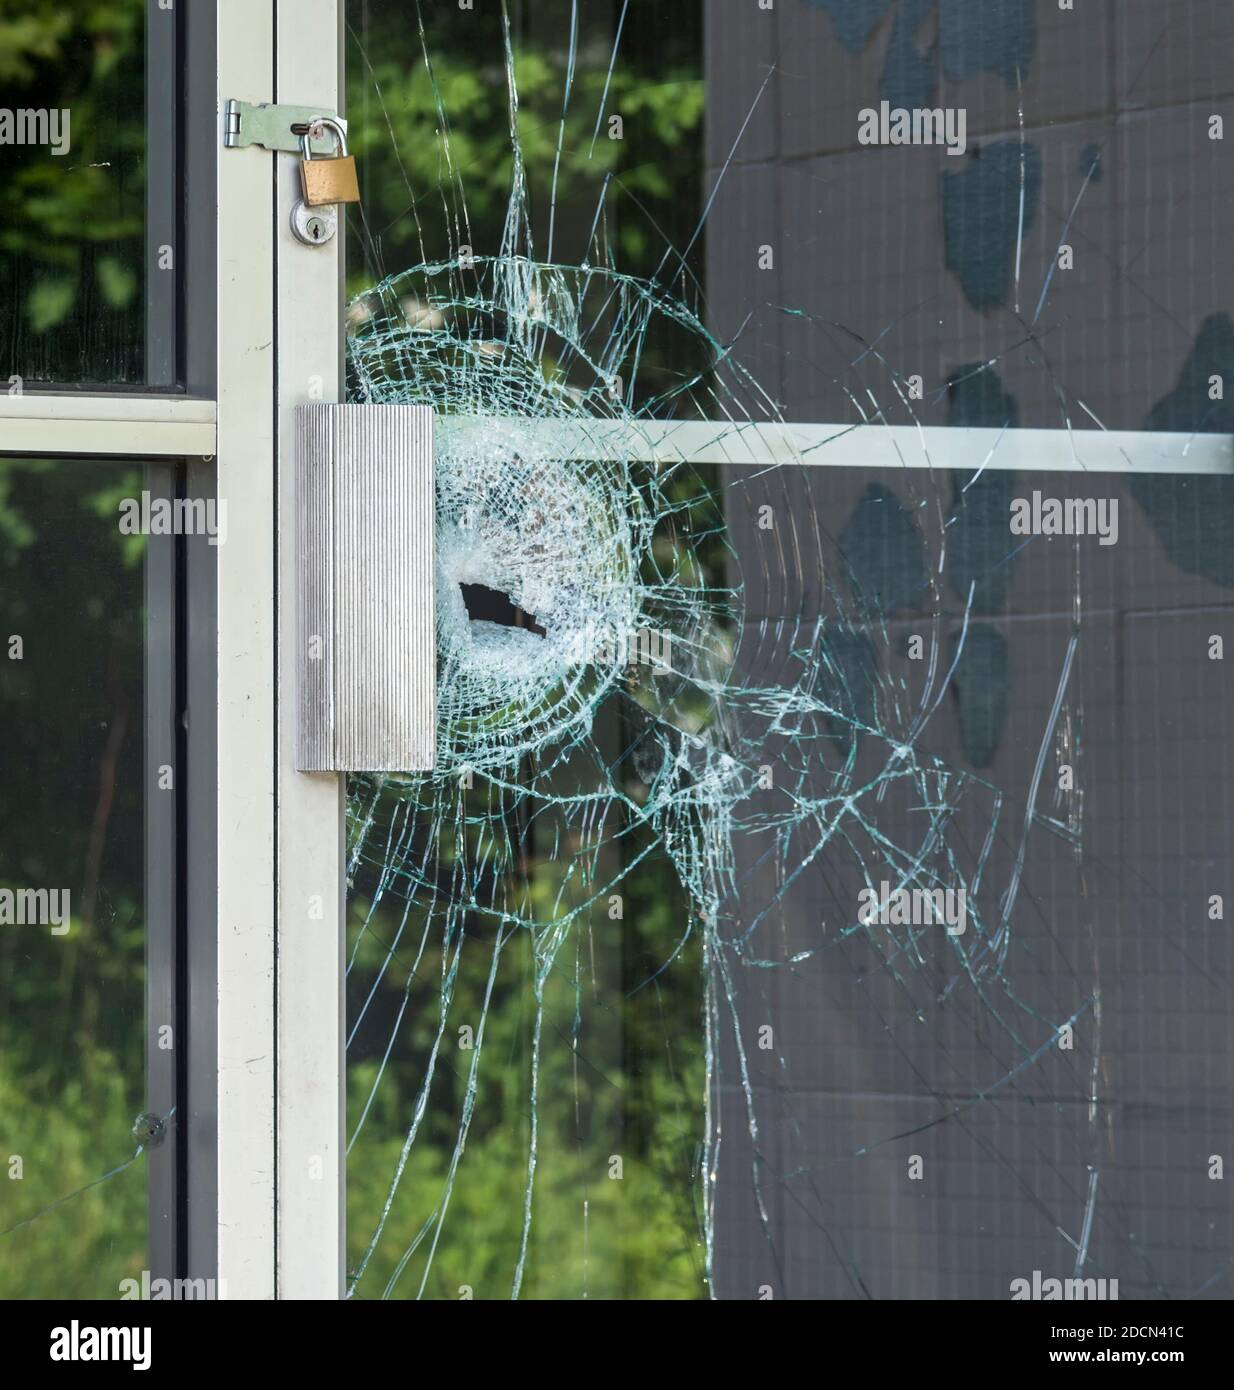 A broken glass window in an aluminum frame door. Door is padlocked. Stock Photo